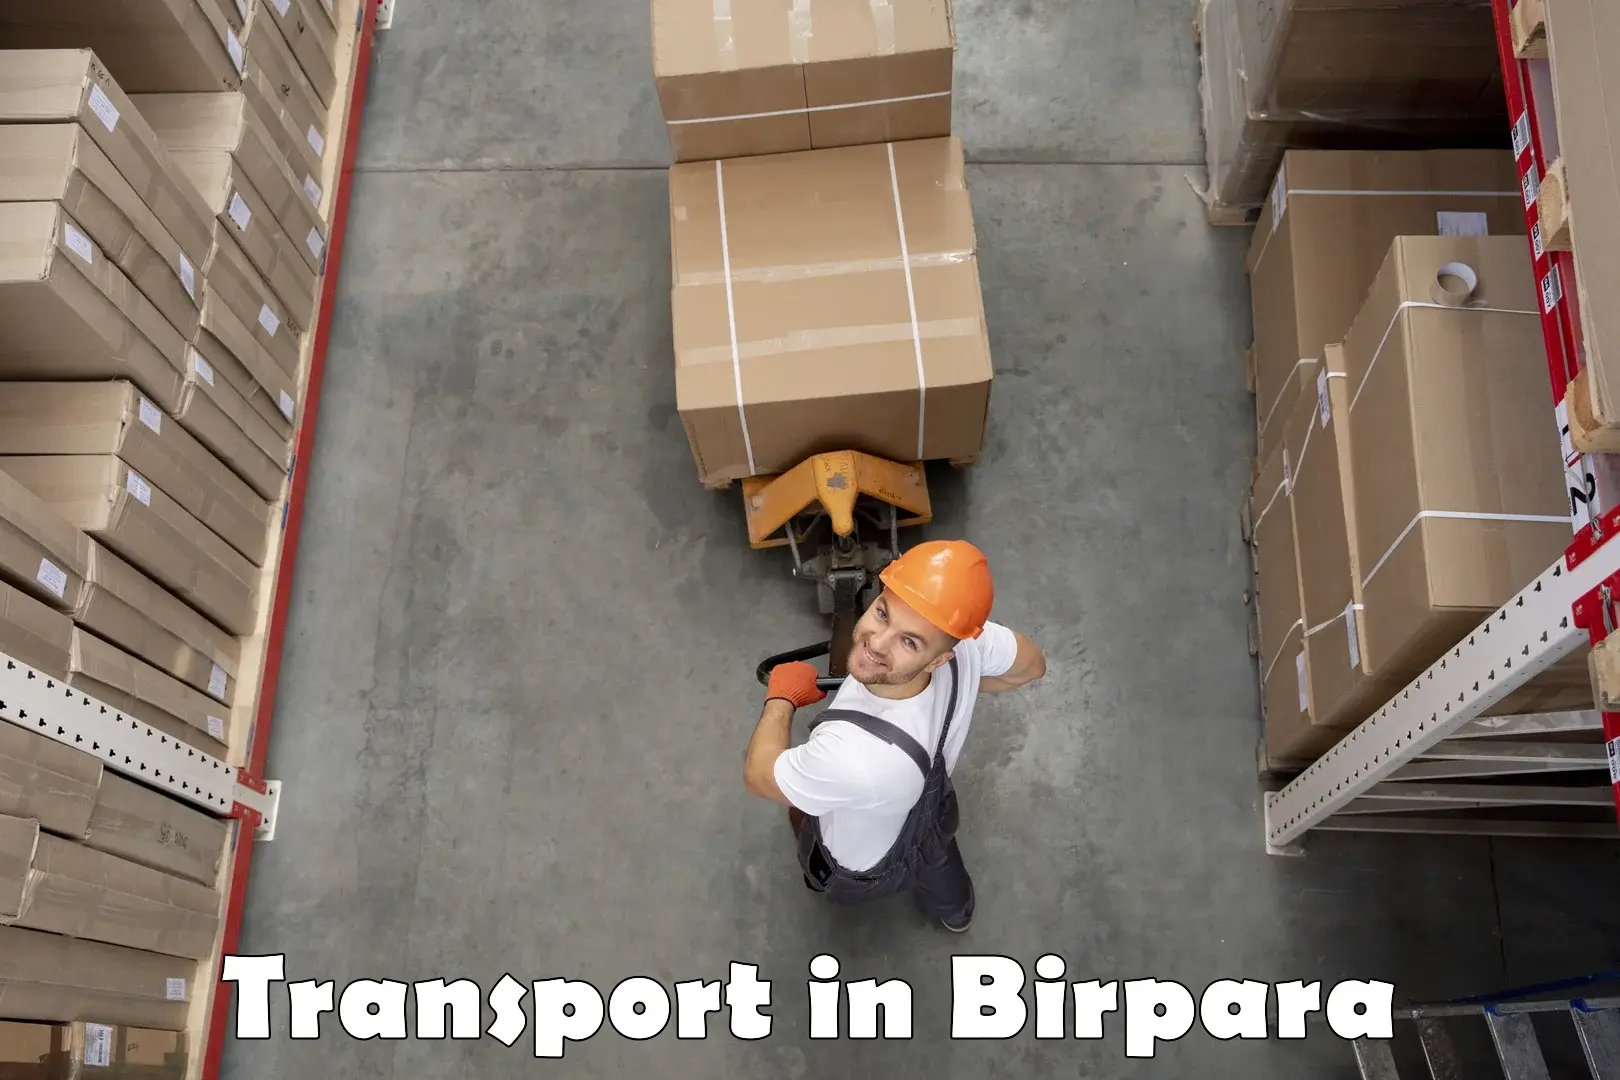 Interstate transport services in Birpara